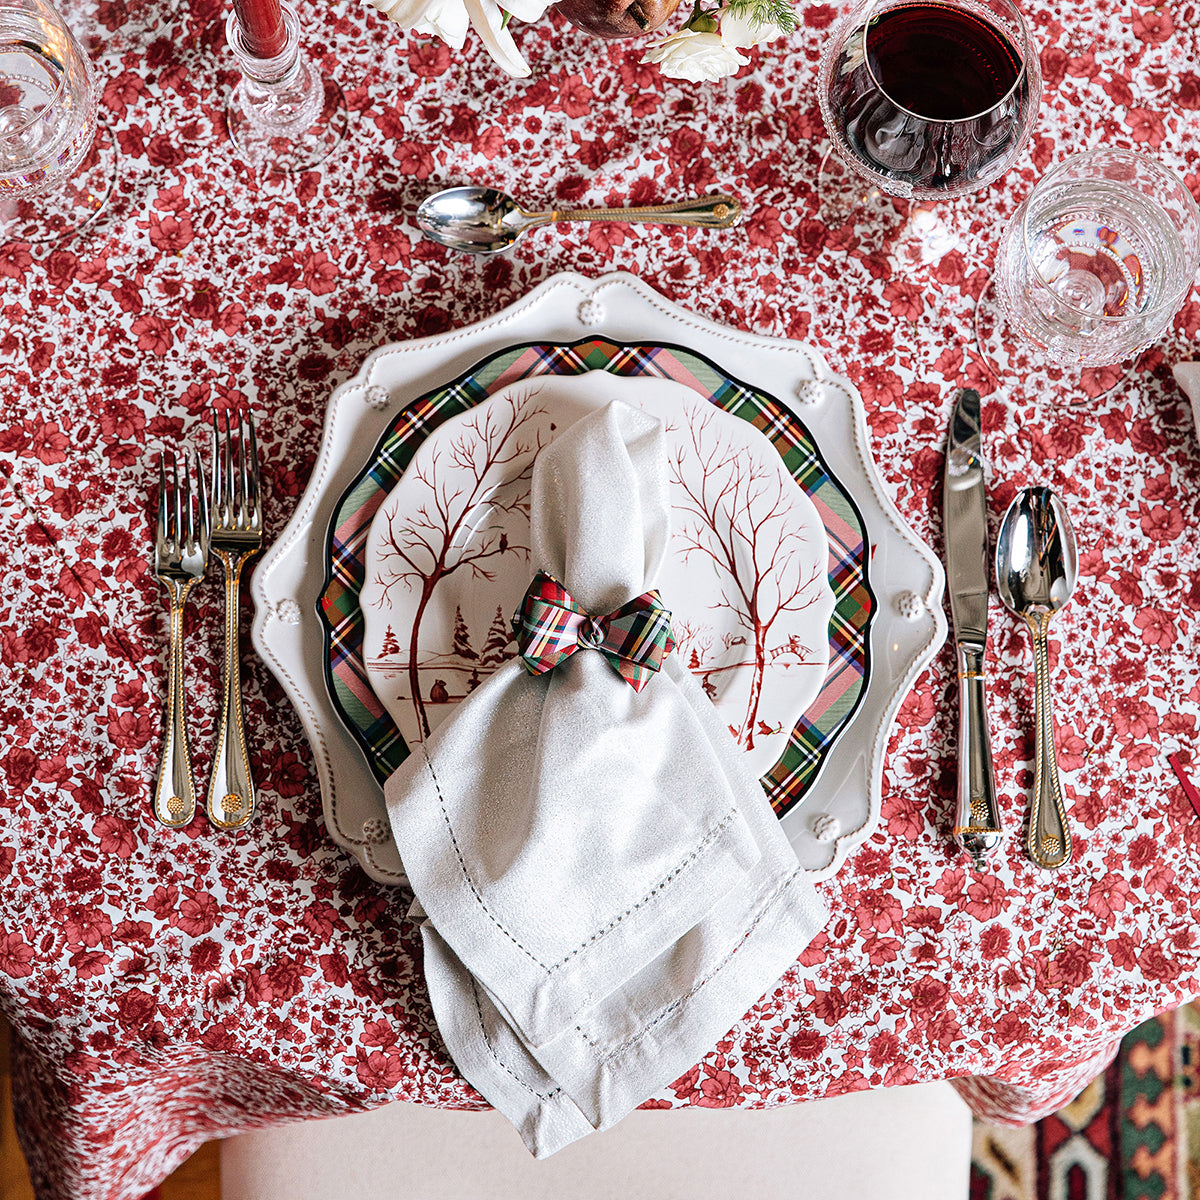 Heirloom Whitewash Linen Napkin with Country Estate Winter Frolic and Stewart Tartan dinnerware.